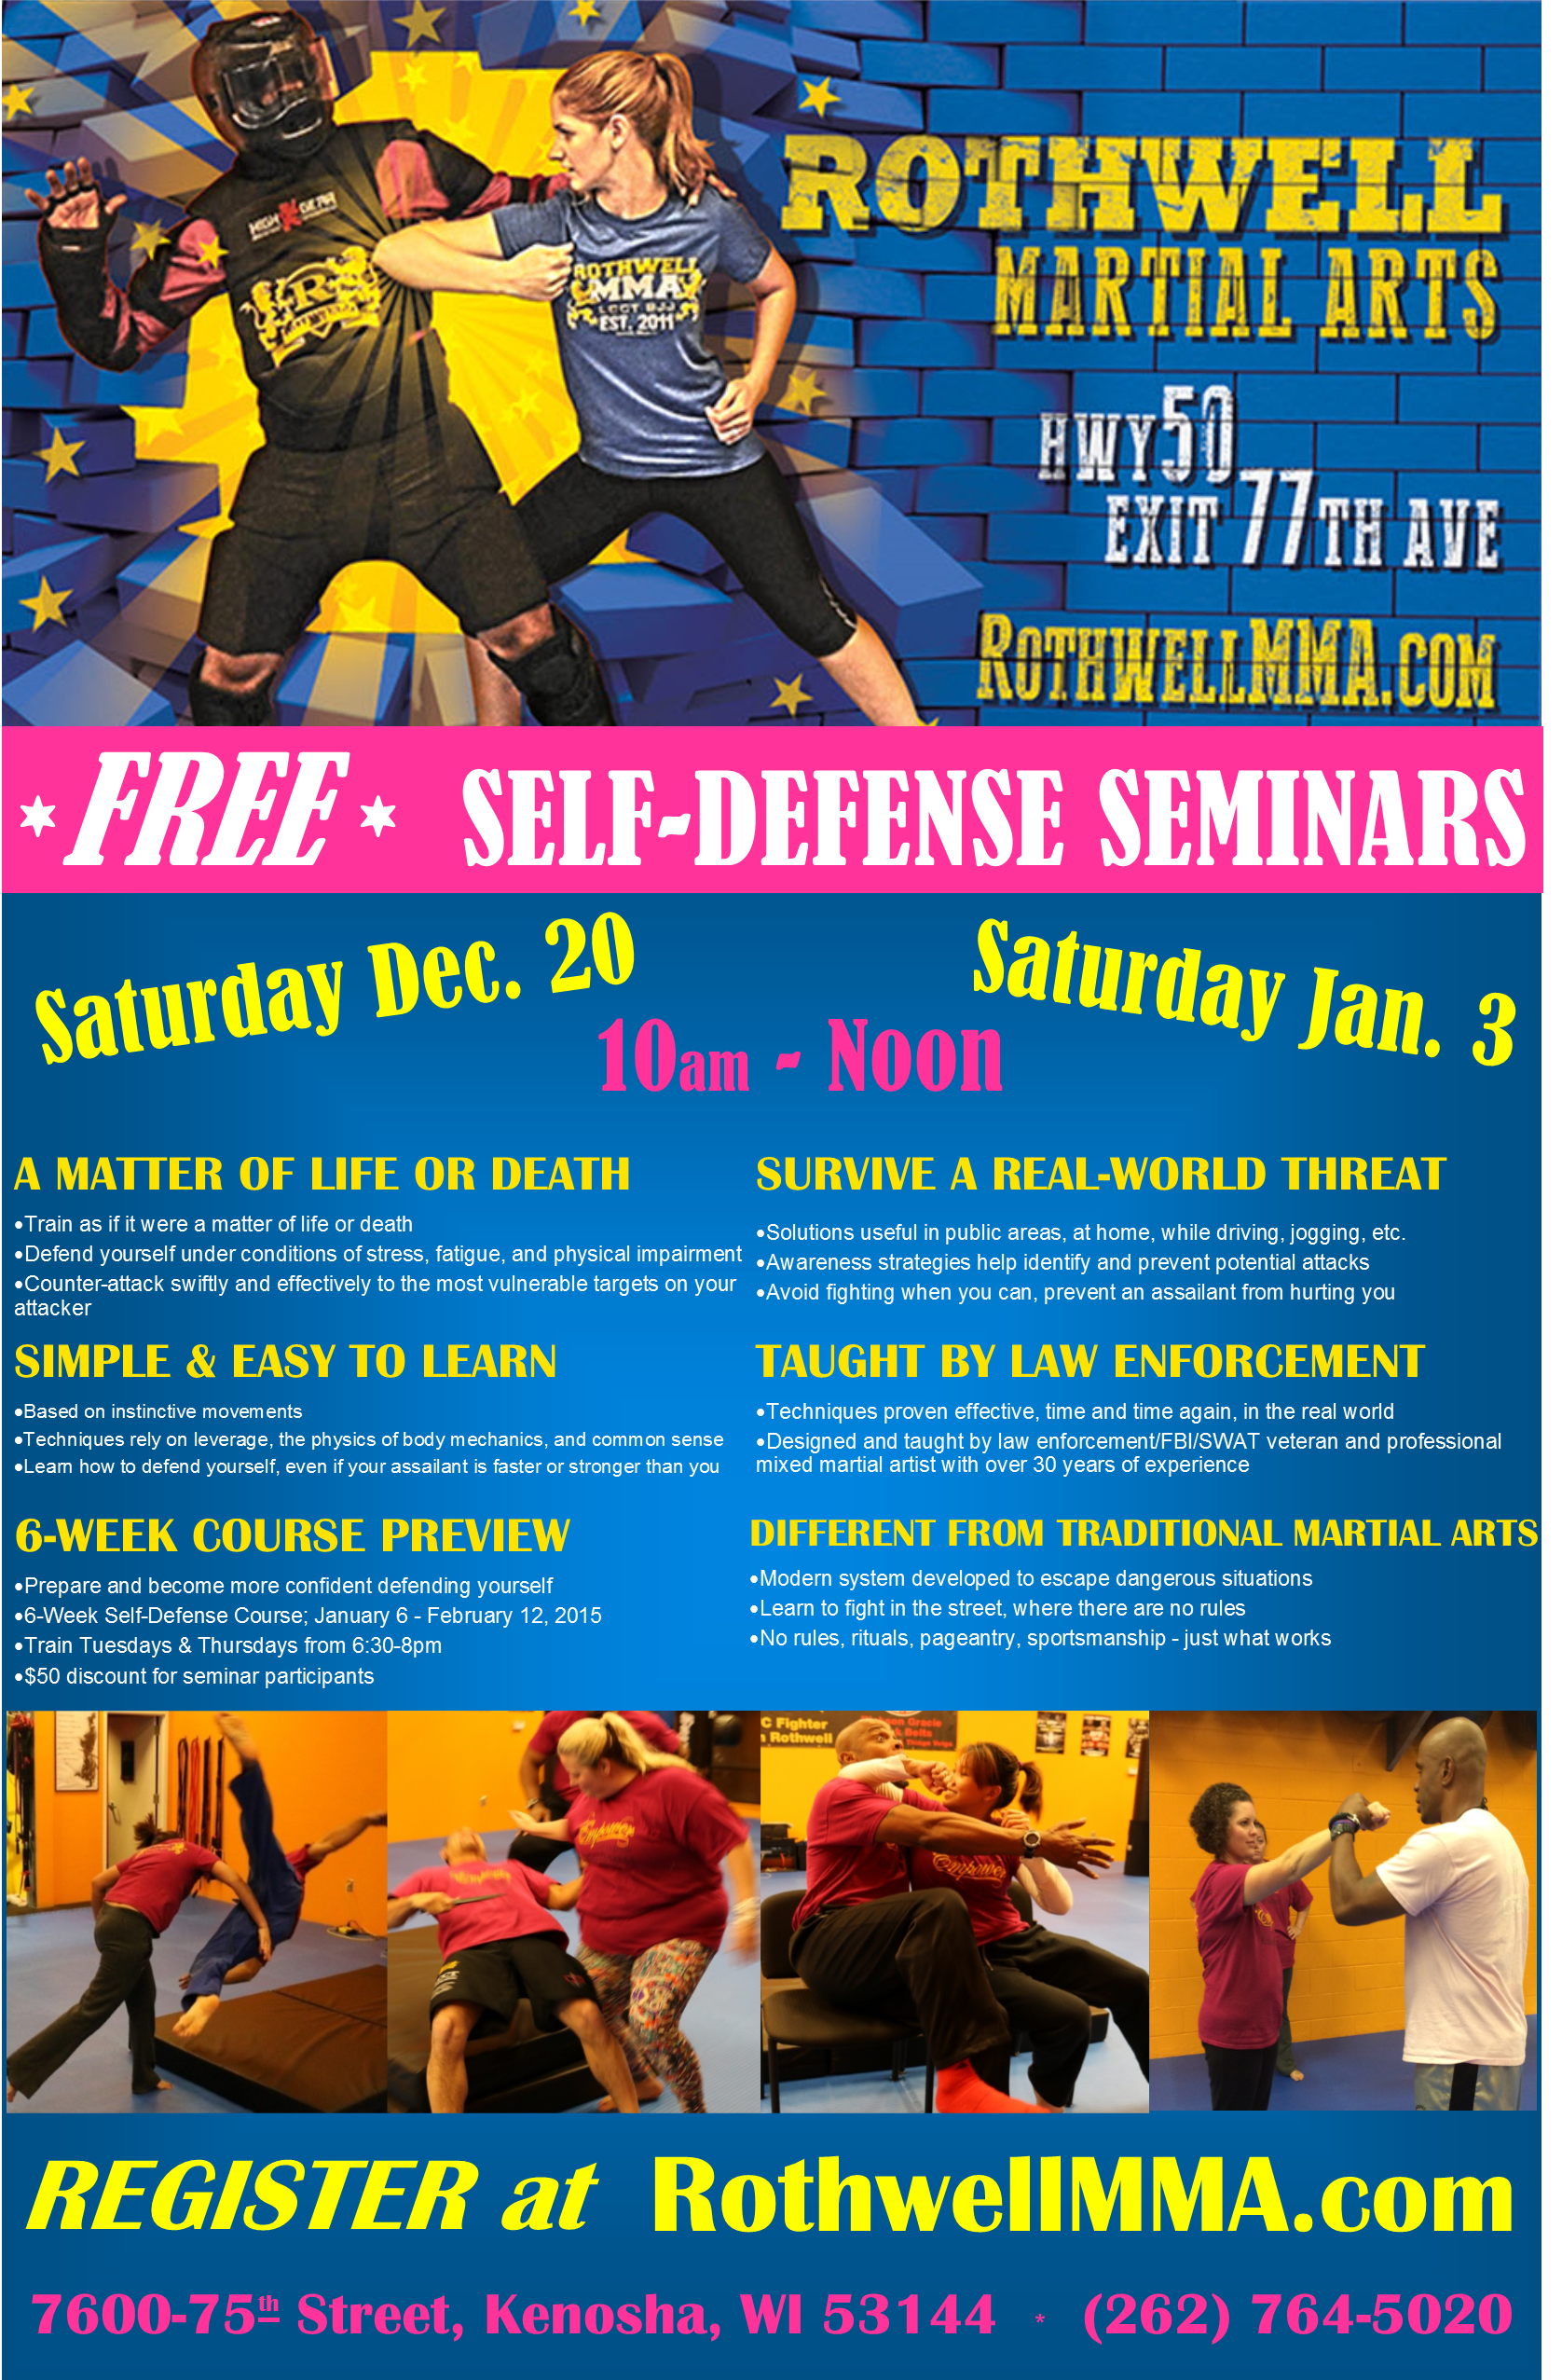 FREE Self-Defense Seminar